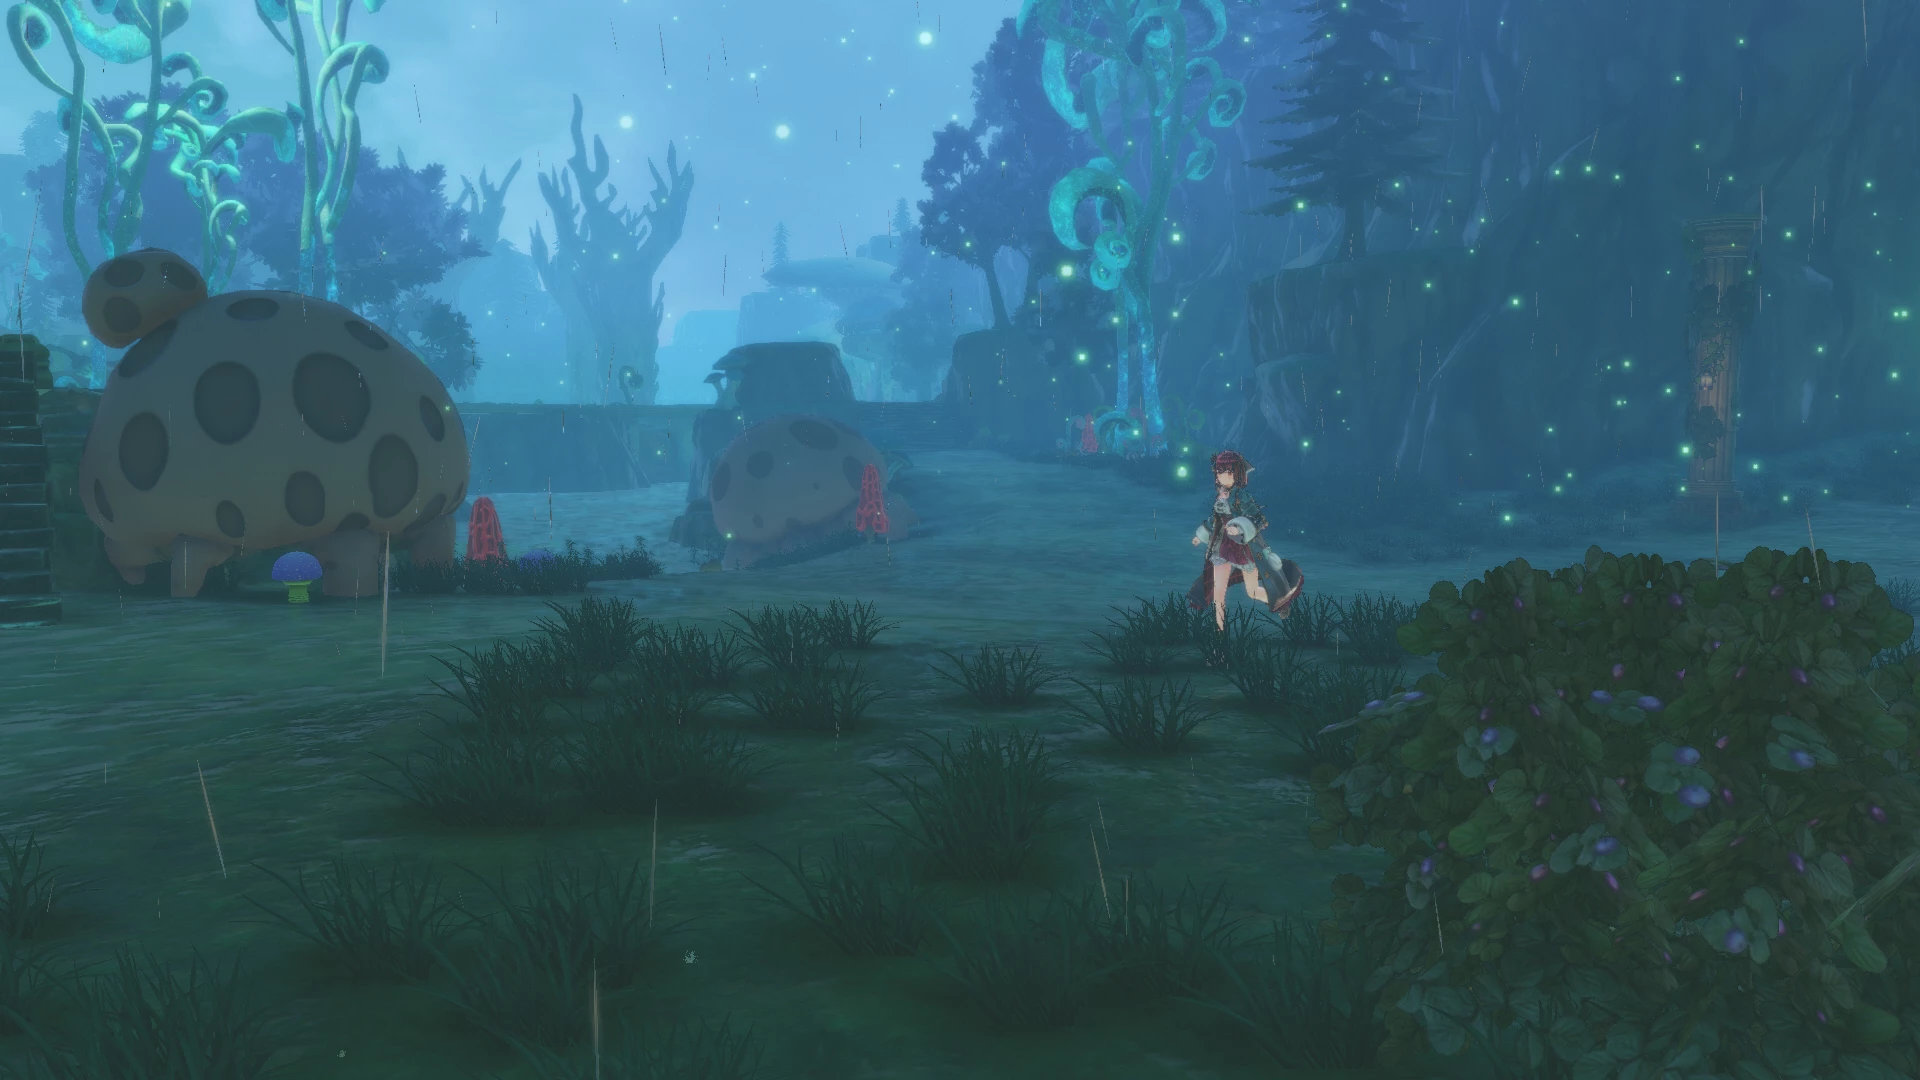 Atelier Sophie 2: The Alchemist of the Mysterious Dream voor de PlayStation 4 preorder plaatsen op nedgame.nl